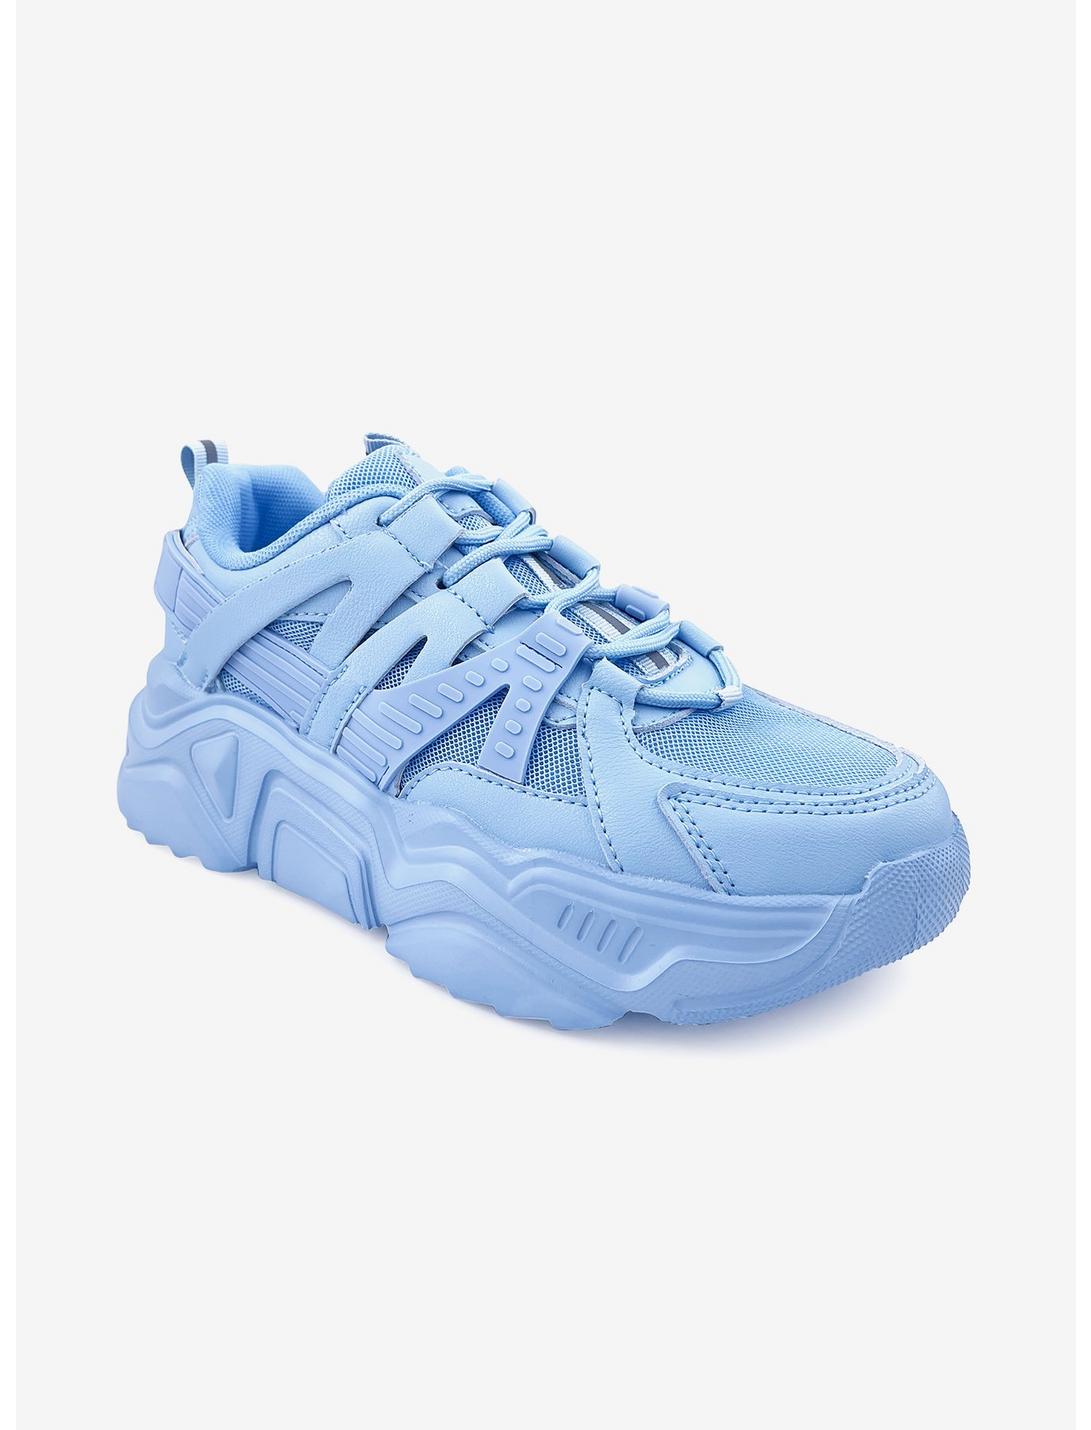 Briella Platform Sneaker Blue, BLUE, hi-res